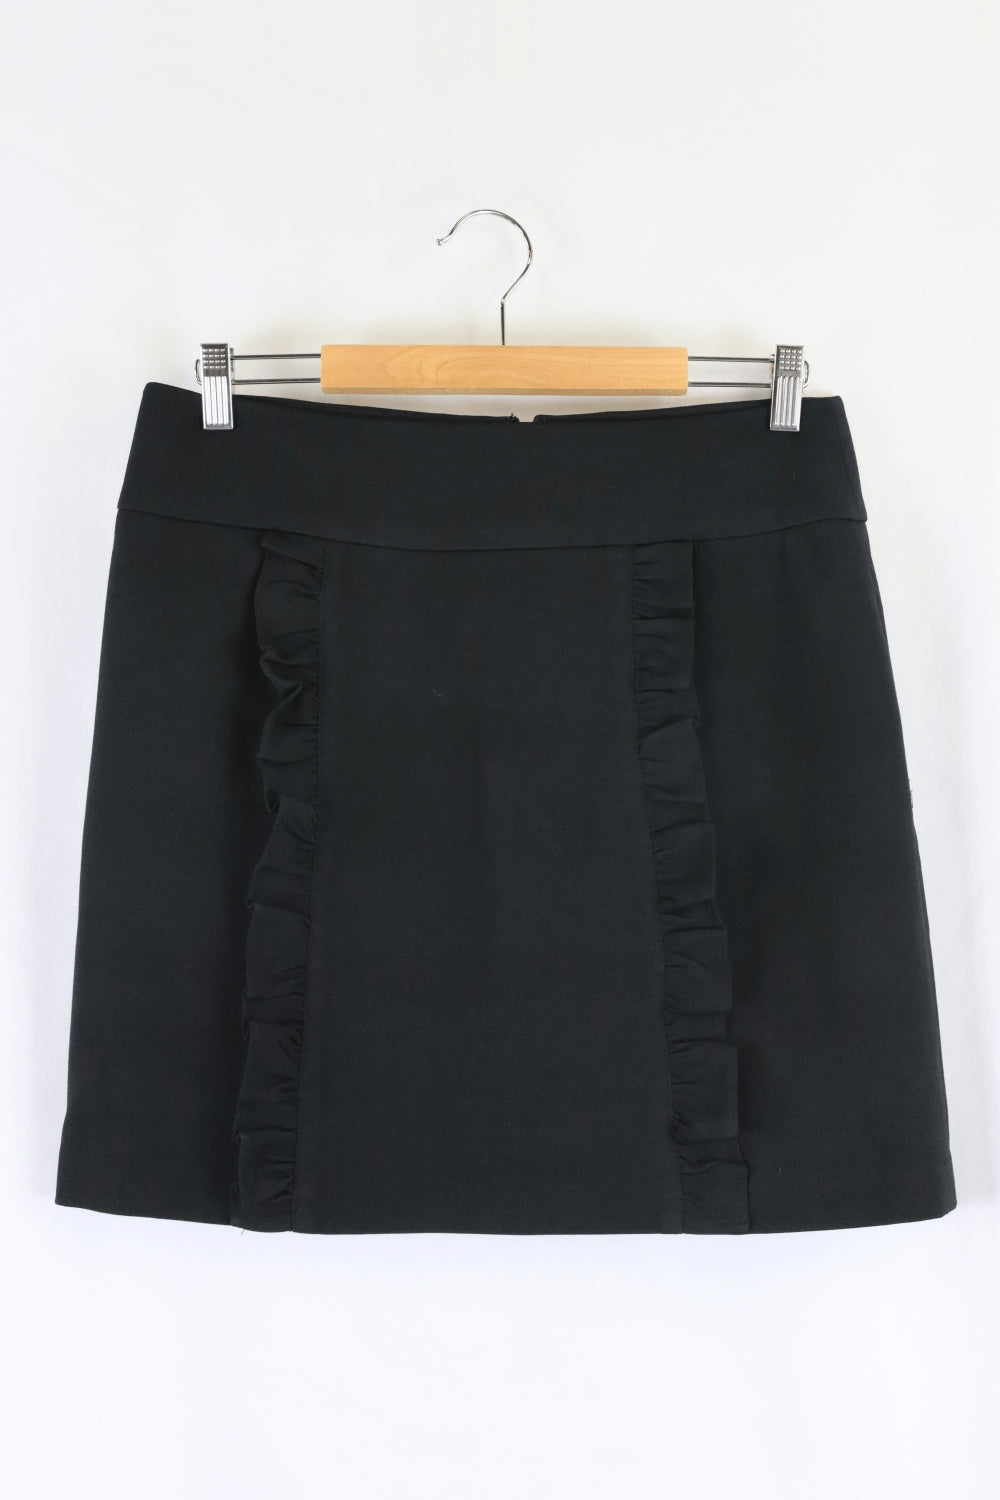 Basque Black Mini Skirt 10